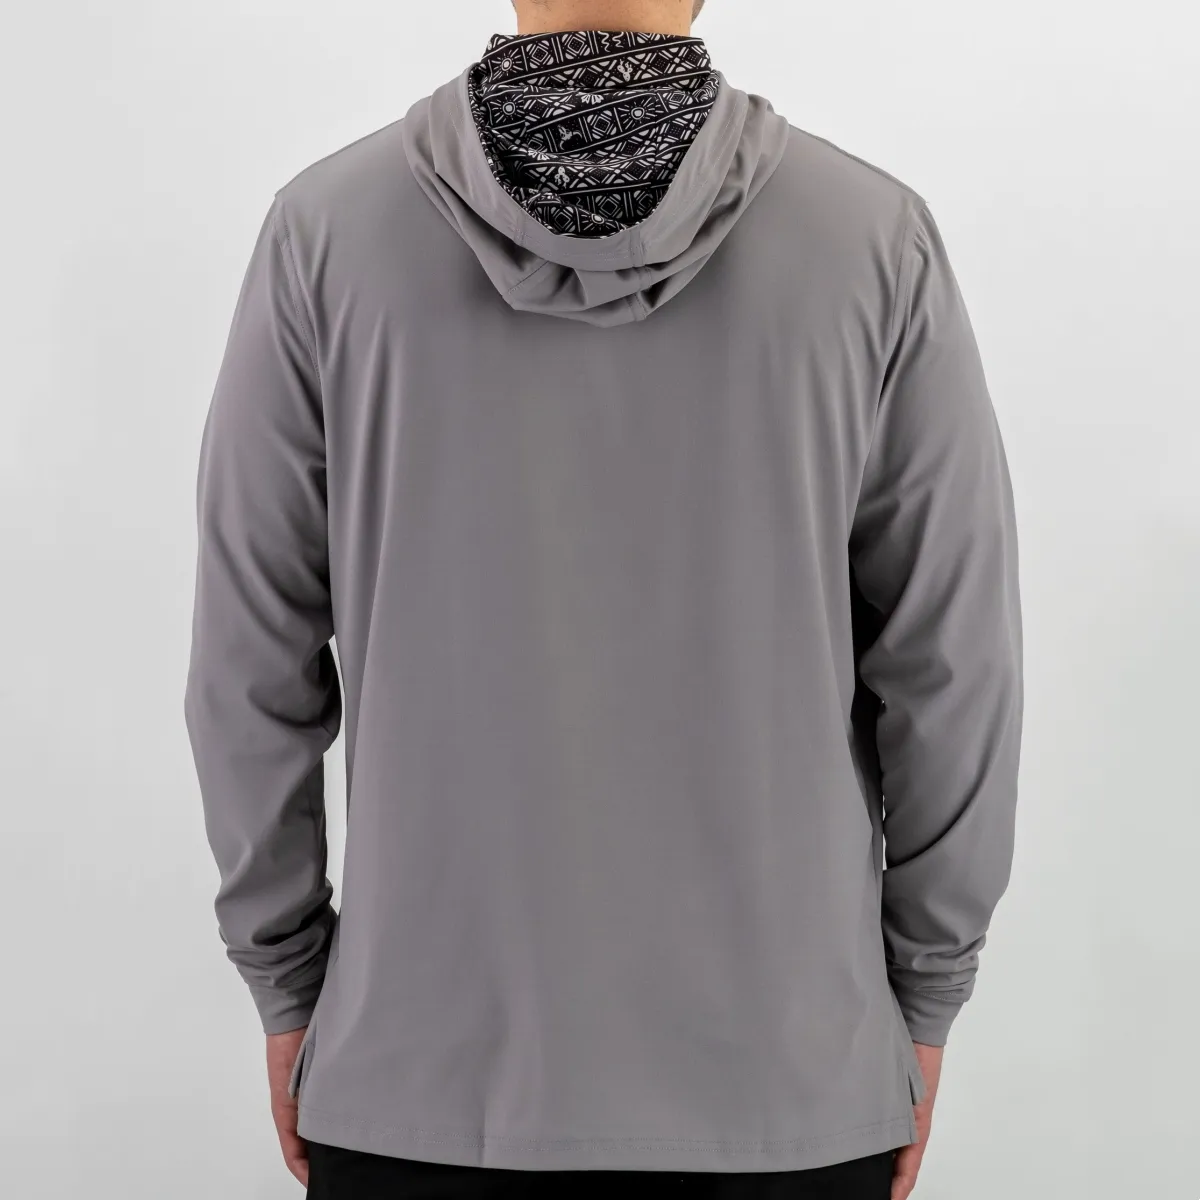 Blank Hooded Stitching Color Hoodies Sweatshirts 180 Grams Lightweight Custom LOGO Mens Pullover Golf Hoodie